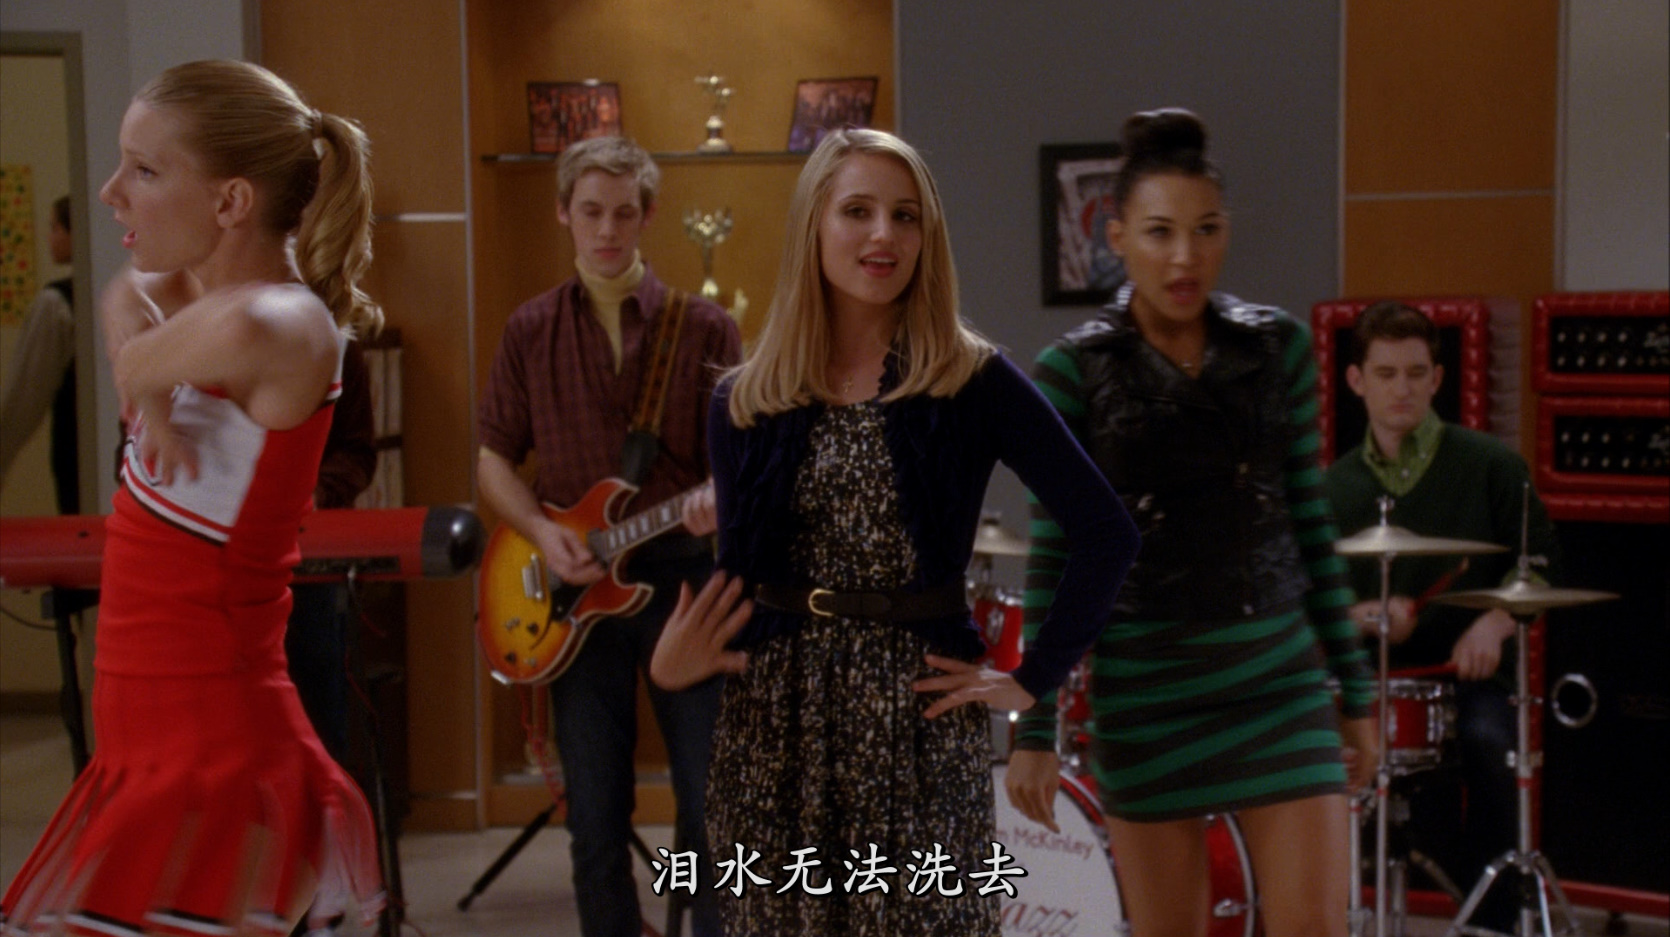 欢乐合唱团 第四季 全22集 [DIY 网飞官方简繁字幕] Glee S04 2012 1080p BluRay DTS-HD MA5.1 H.264-PWt@OurBits[182.49GB]-7.jpg